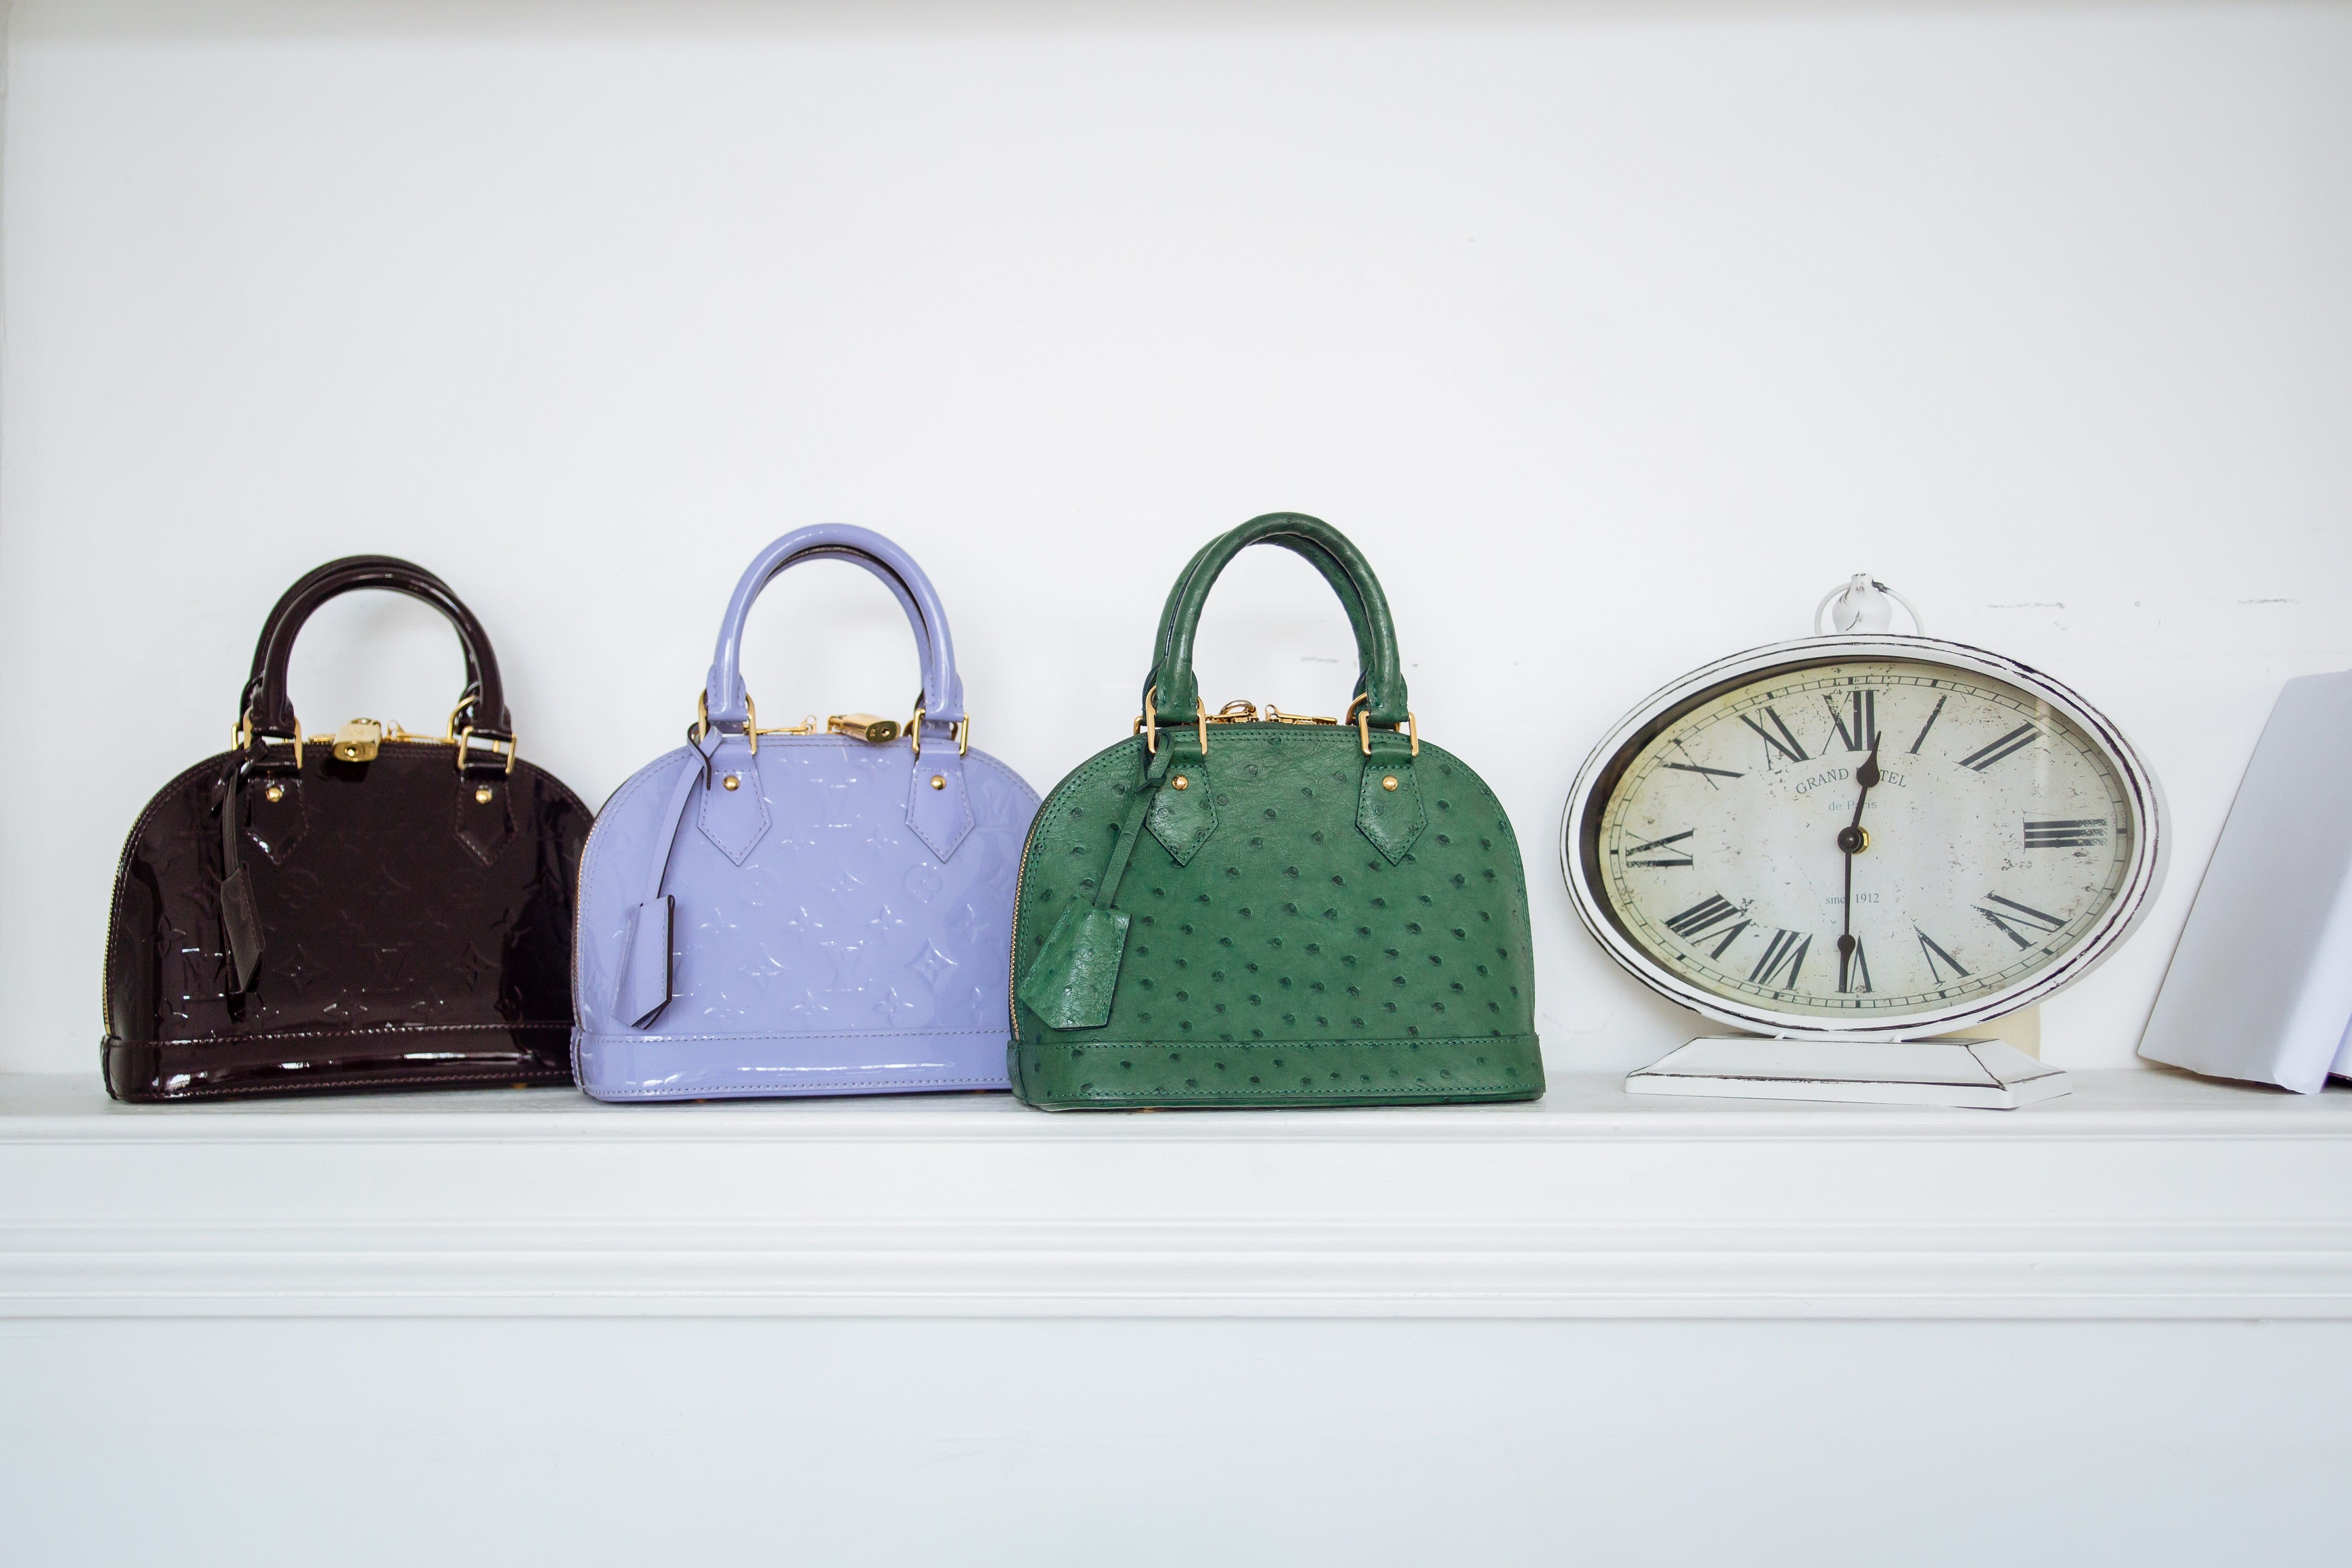 Quale borsa classica di Louis Vuitton da acquistare: LV ALMA VS LV Speedy LV ALMA Materiali disponibili